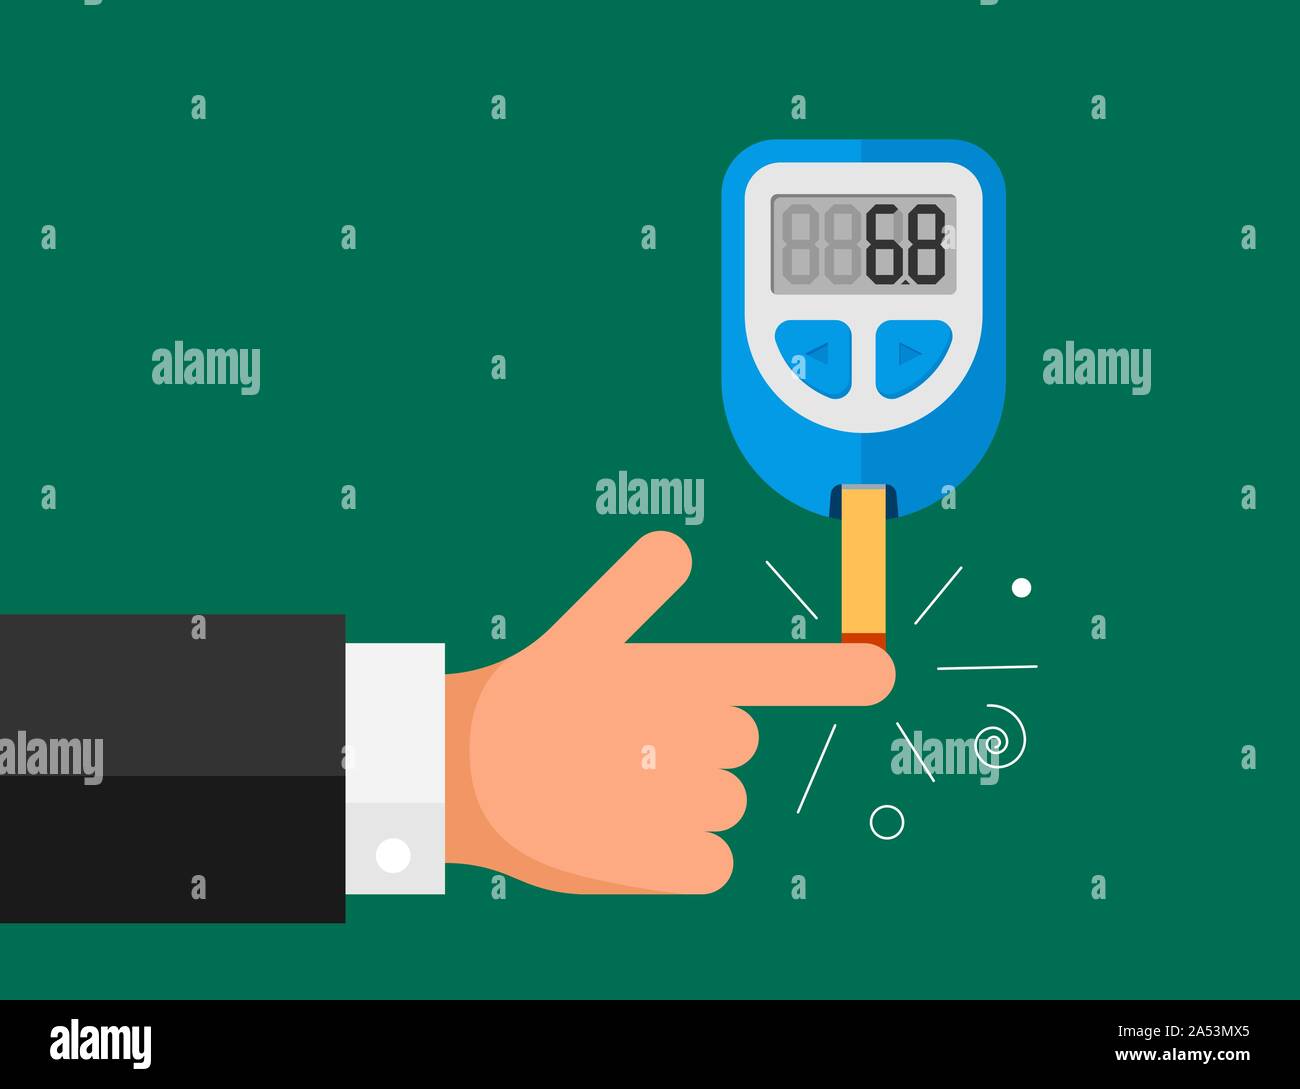 Blutzuckermessgerät zur Messung des Zuckertestkontrollgeräts. Elektronischer Monitor Glucometer mit diabetischer Patient Handfinger. Medizinische Vektor Diabetes Selbstkontrolle Illusrtation Stock Vektor